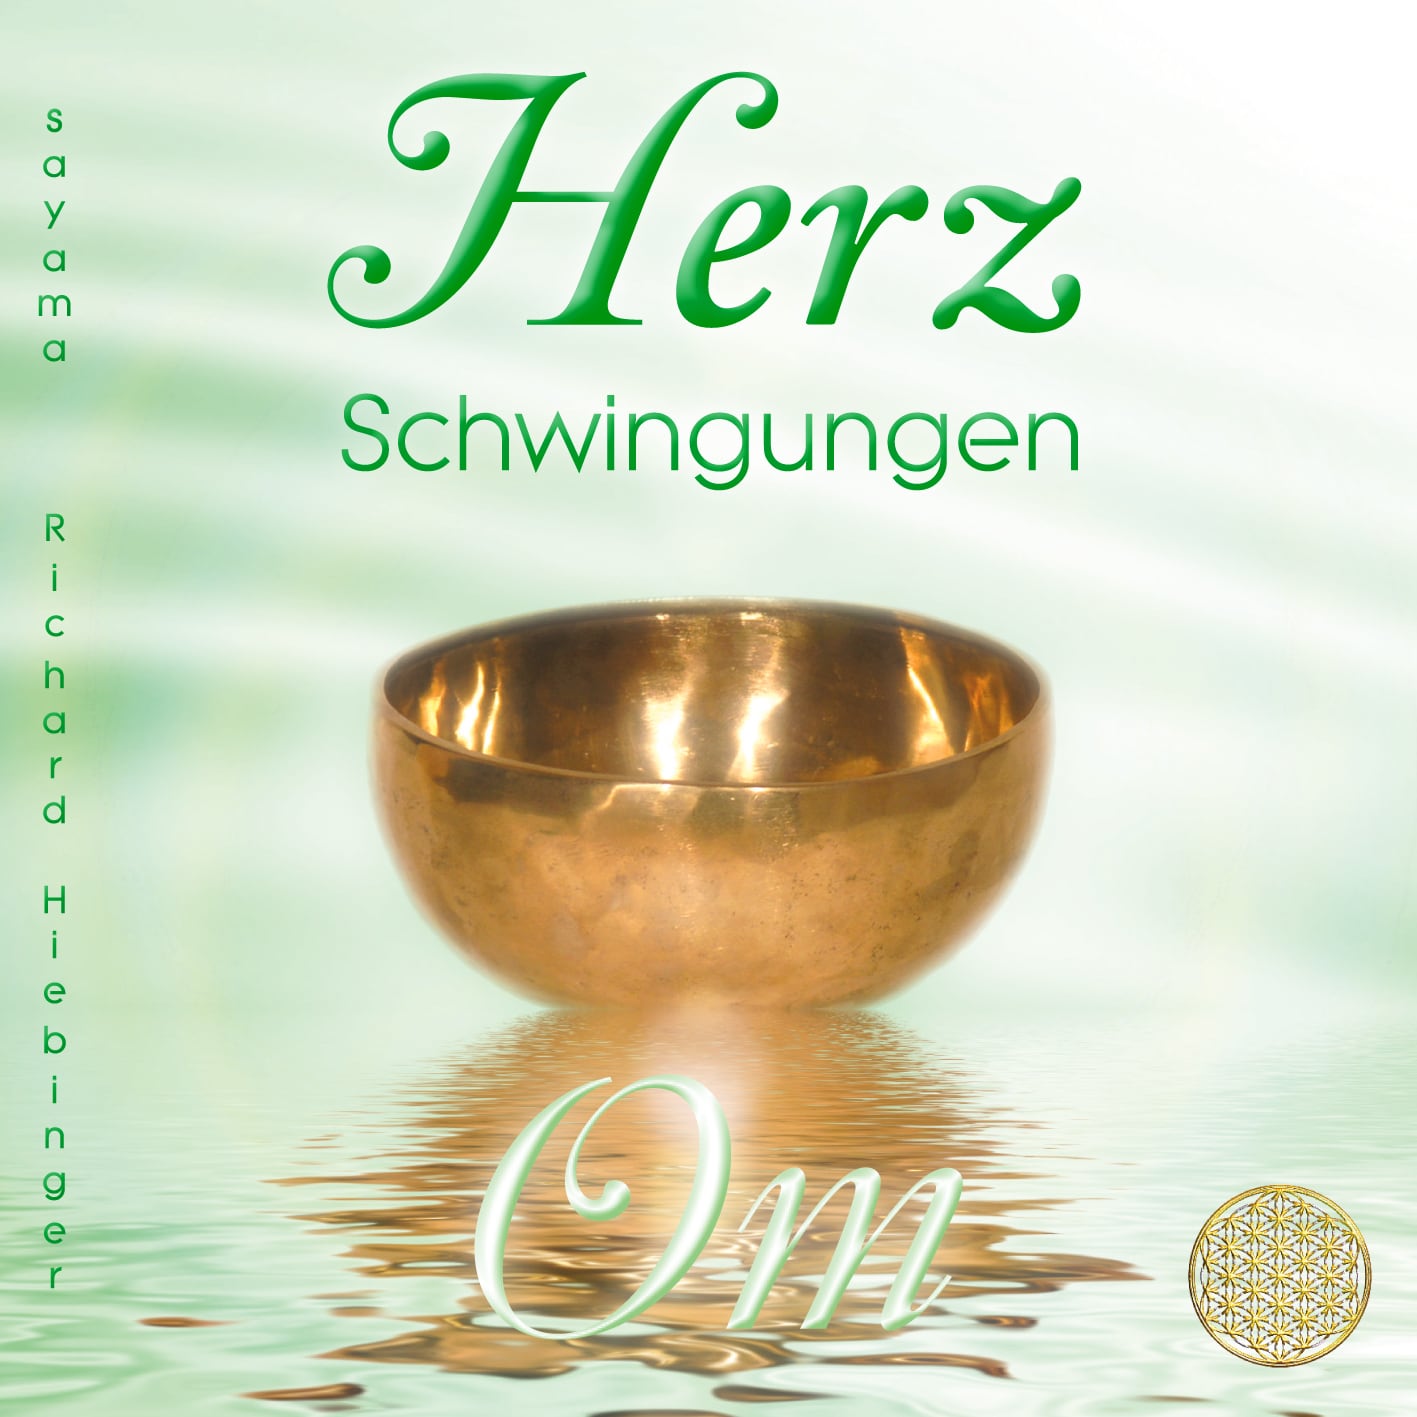 CD Titelbild Herzschwingungen Om von Sayama Music Richard Hiebinger. https://www.sayama-music.de/cds/herzschwingungen-om/